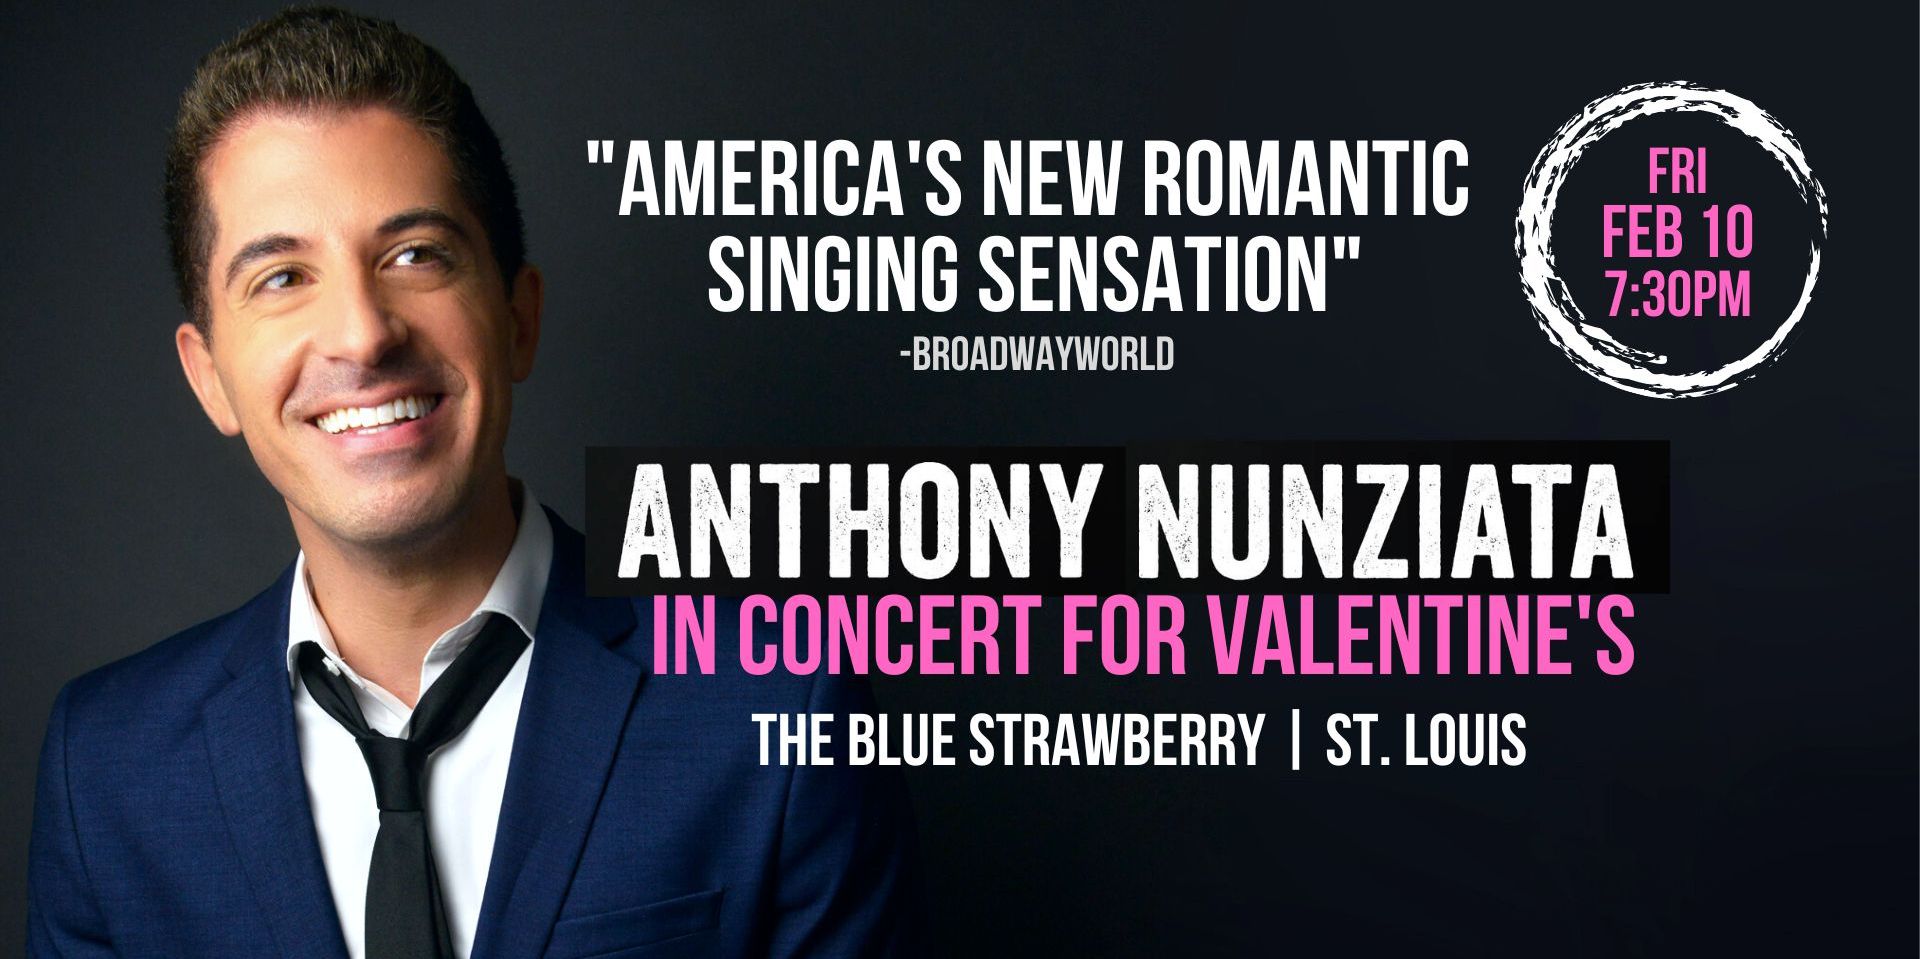 Anthony Nunziata promotional image